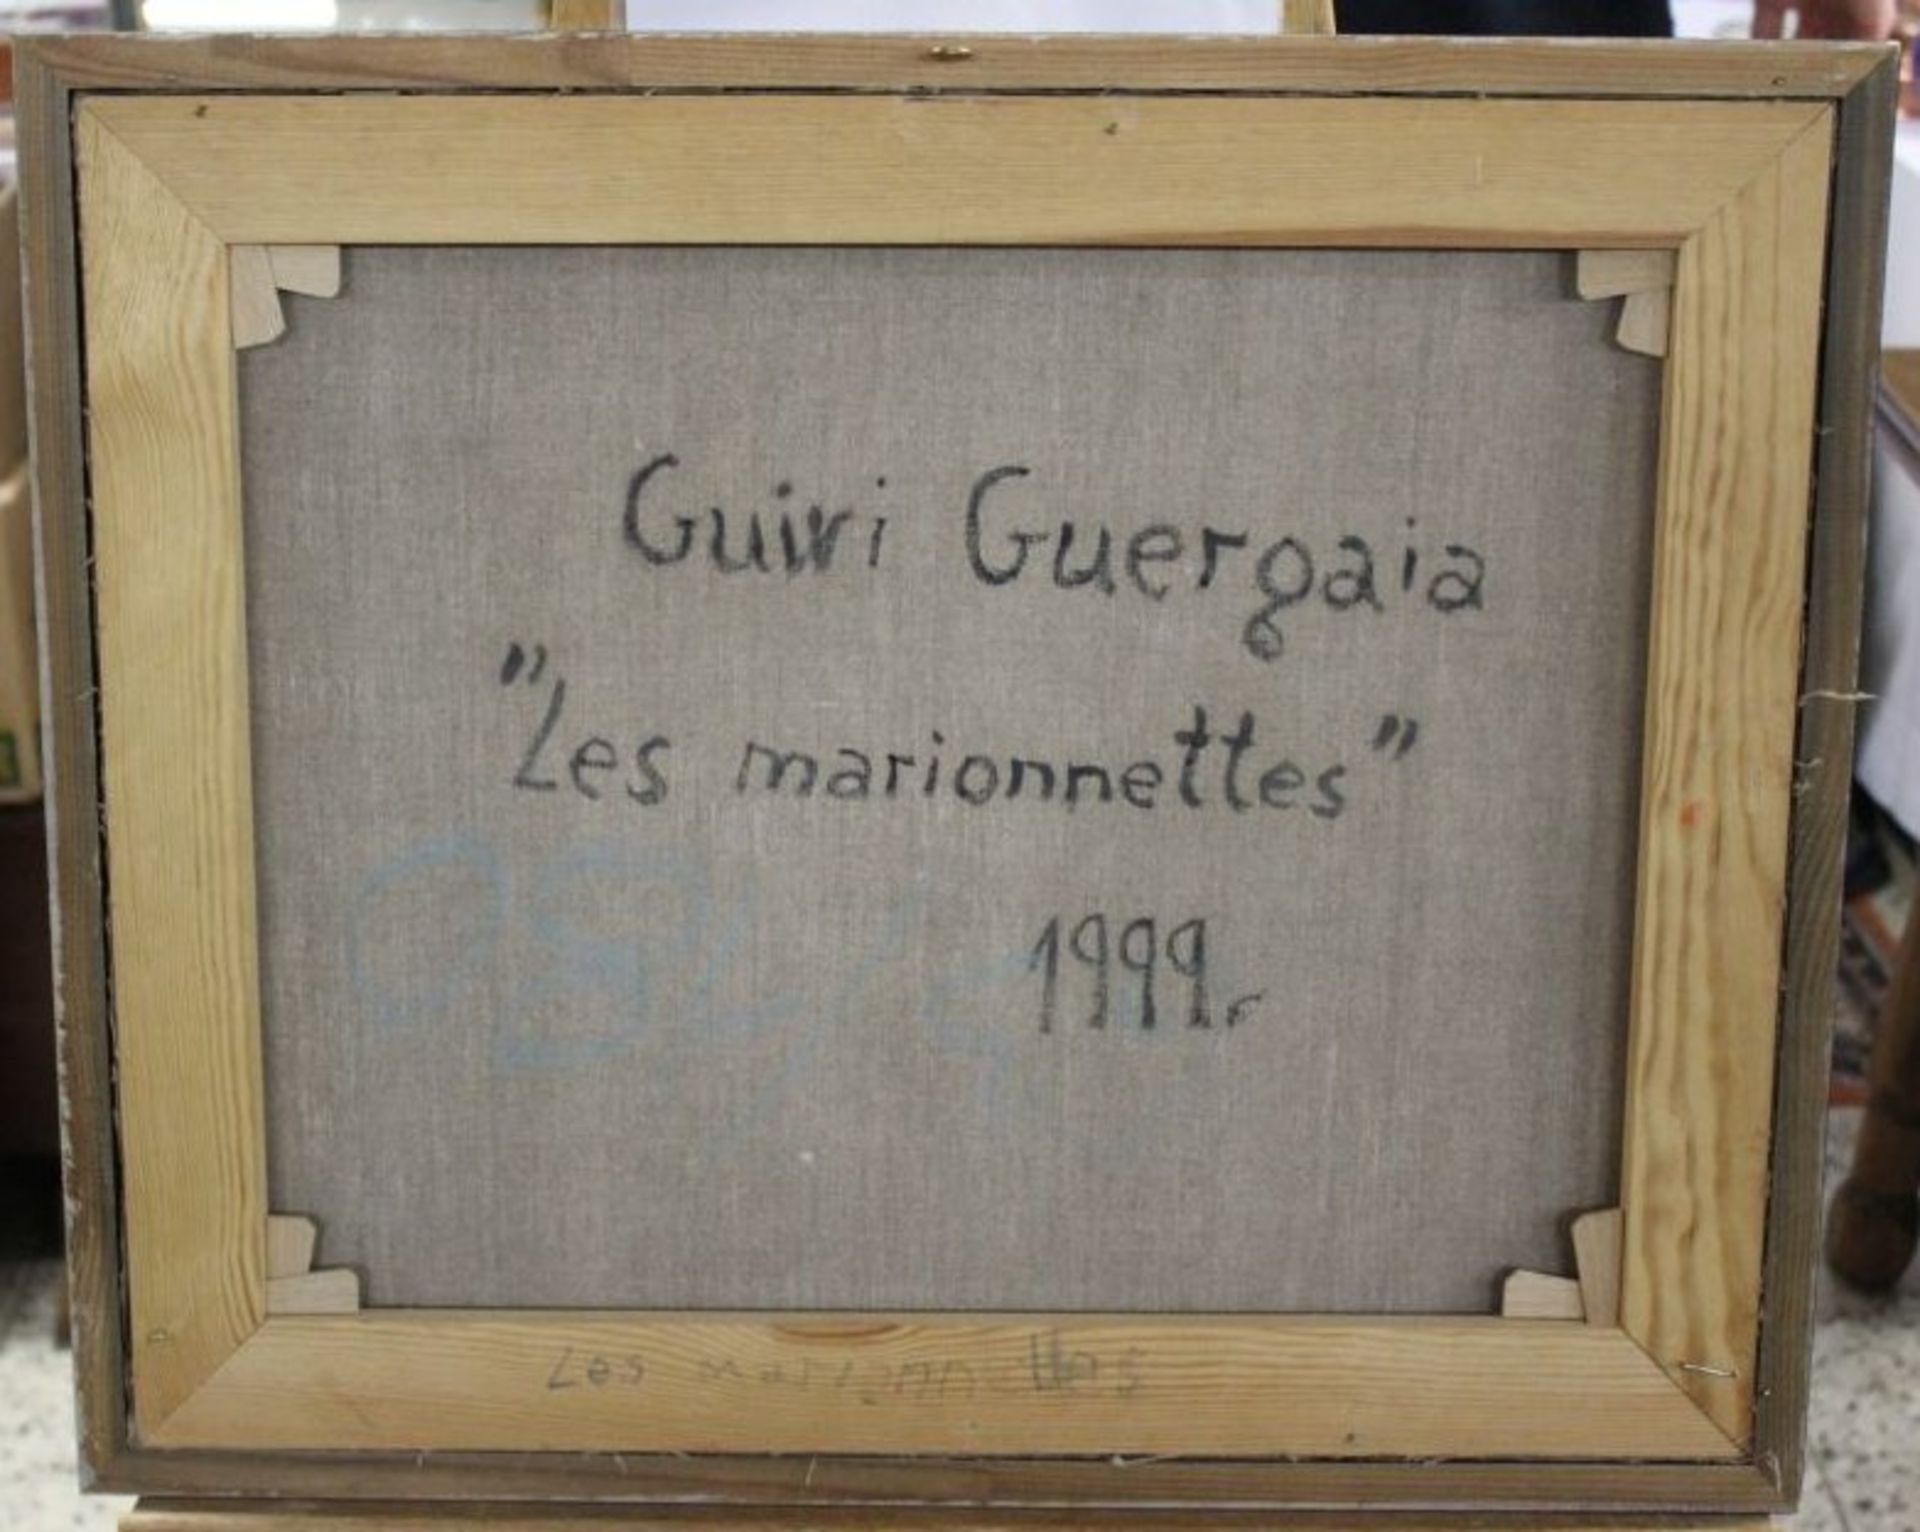 Guivi Guergaia "Les Marionettes", Öl/Leinwand, datiert 1999, gerahmt, RG 50 x 60cm.- - -22.61 % - Bild 4 aus 4